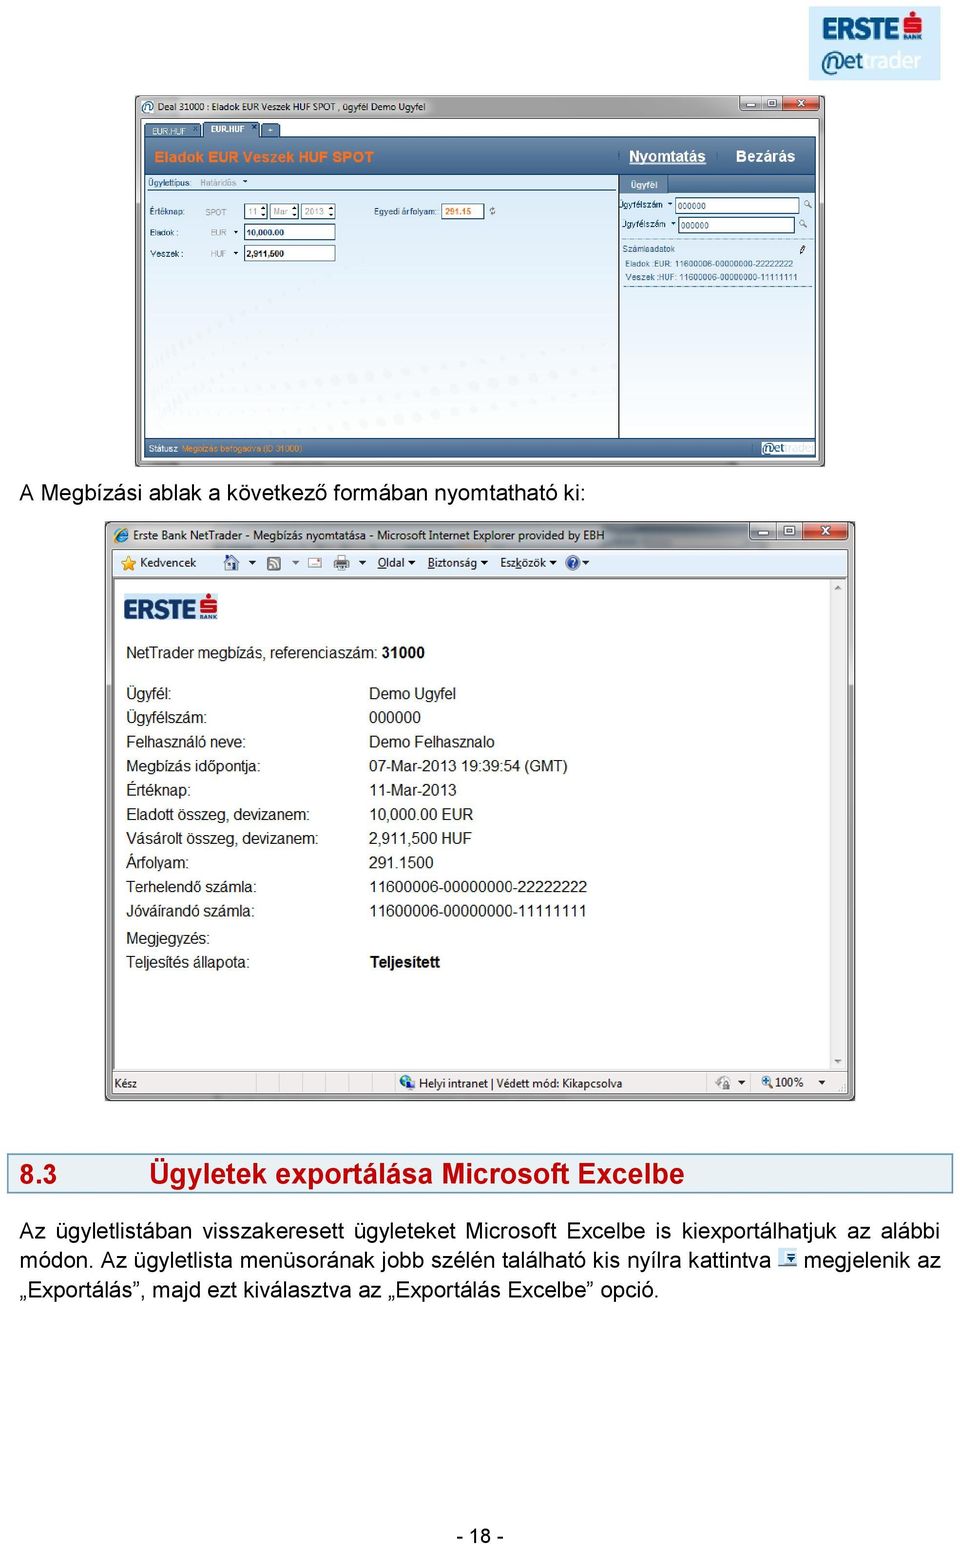 Microsoft Excelbe is kiexportálhatjuk az alábbi módon.